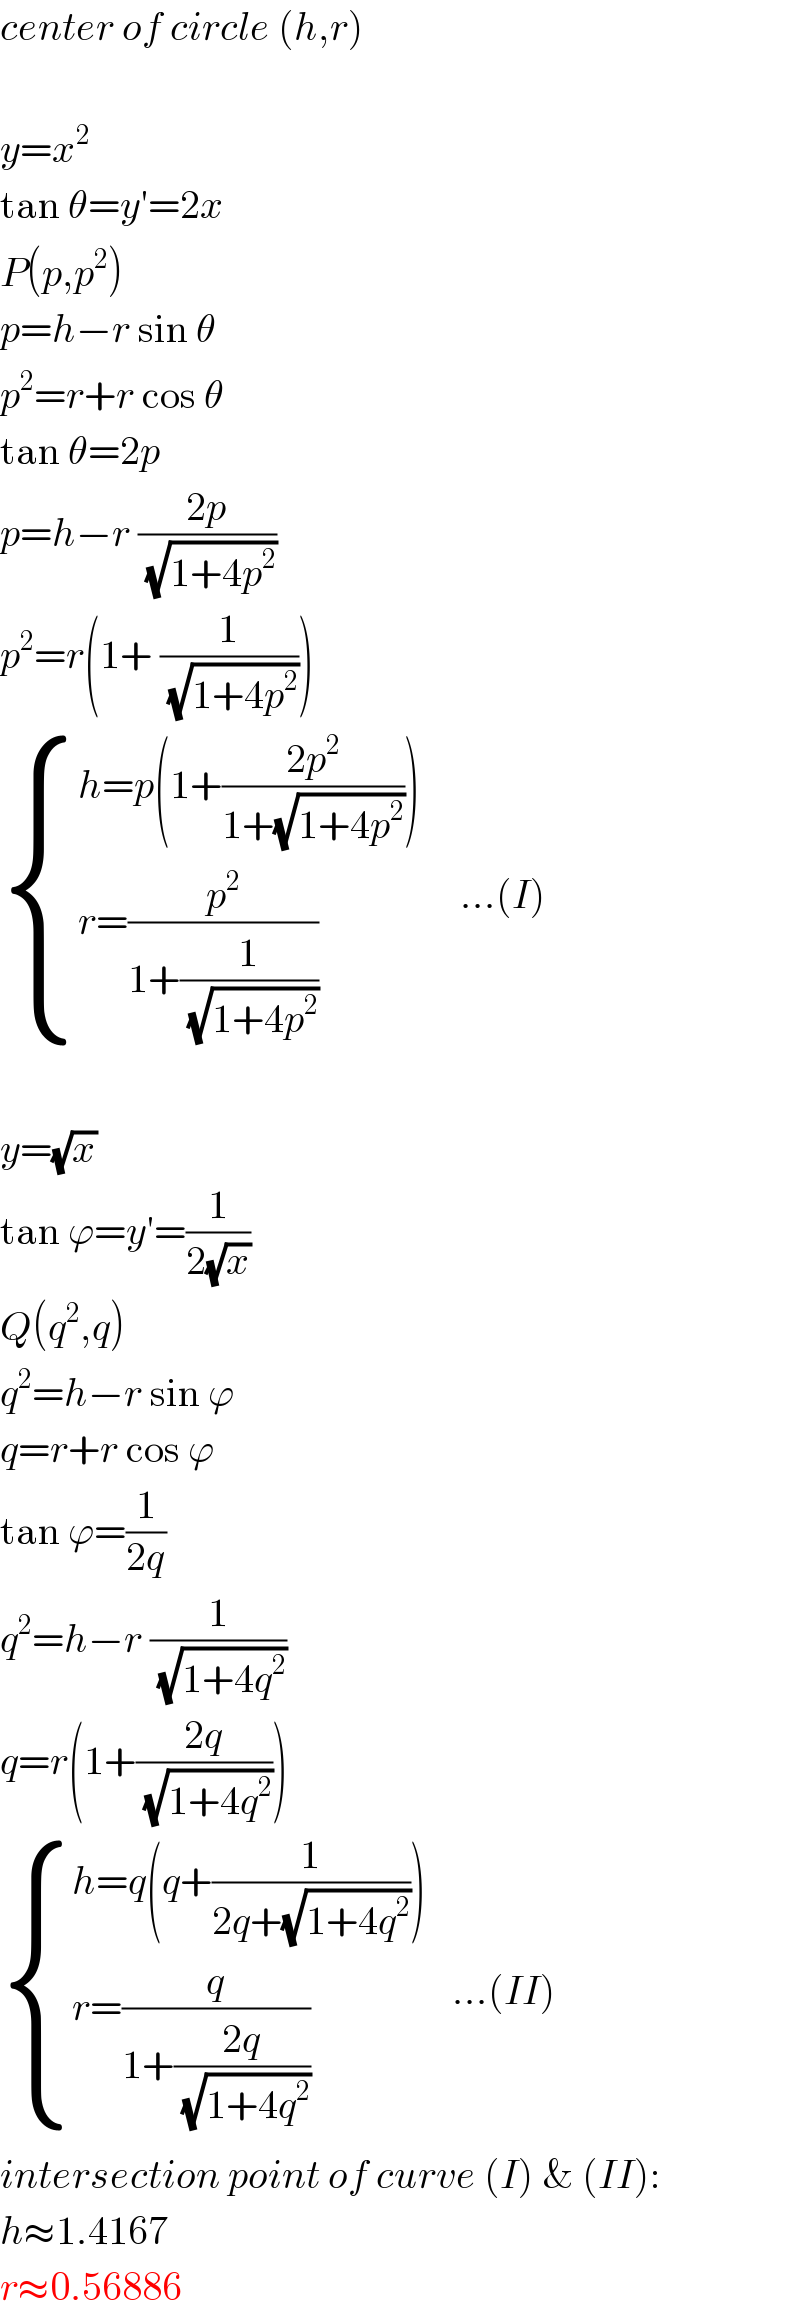 center of circle (h,r)    y=x^2   tan θ=y′=2x  P(p,p^2 )  p=h−r sin θ  p^2 =r+r cos θ  tan θ=2p  p=h−r ((2p)/(√(1+4p^2 )))  p^2 =r(1+ (1/(√(1+4p^2 ))))   { ((h=p(1+((2p^2 )/(1+(√(1+4p^2 ))))))),((r=(p^2 /(1+(1/(√(1+4p^2 ))))))) :}     ...(I)    y=(√x)  tan ϕ=y′=(1/(2(√x)))  Q(q^2 ,q)  q^2 =h−r sin ϕ  q=r+r cos ϕ  tan ϕ=(1/(2q))  q^2 =h−r (1/(√(1+4q^2 )))  q=r(1+((2q)/(√(1+4q^2 ))))   { ((h=q(q+(1/(2q+(√(1+4q^2 ))))))),((r=(q/(1+((2q)/(√(1+4q^2 ))))))) :}   ...(II)  intersection point of curve (I) & (II):  h≈1.4167  r≈0.56886  